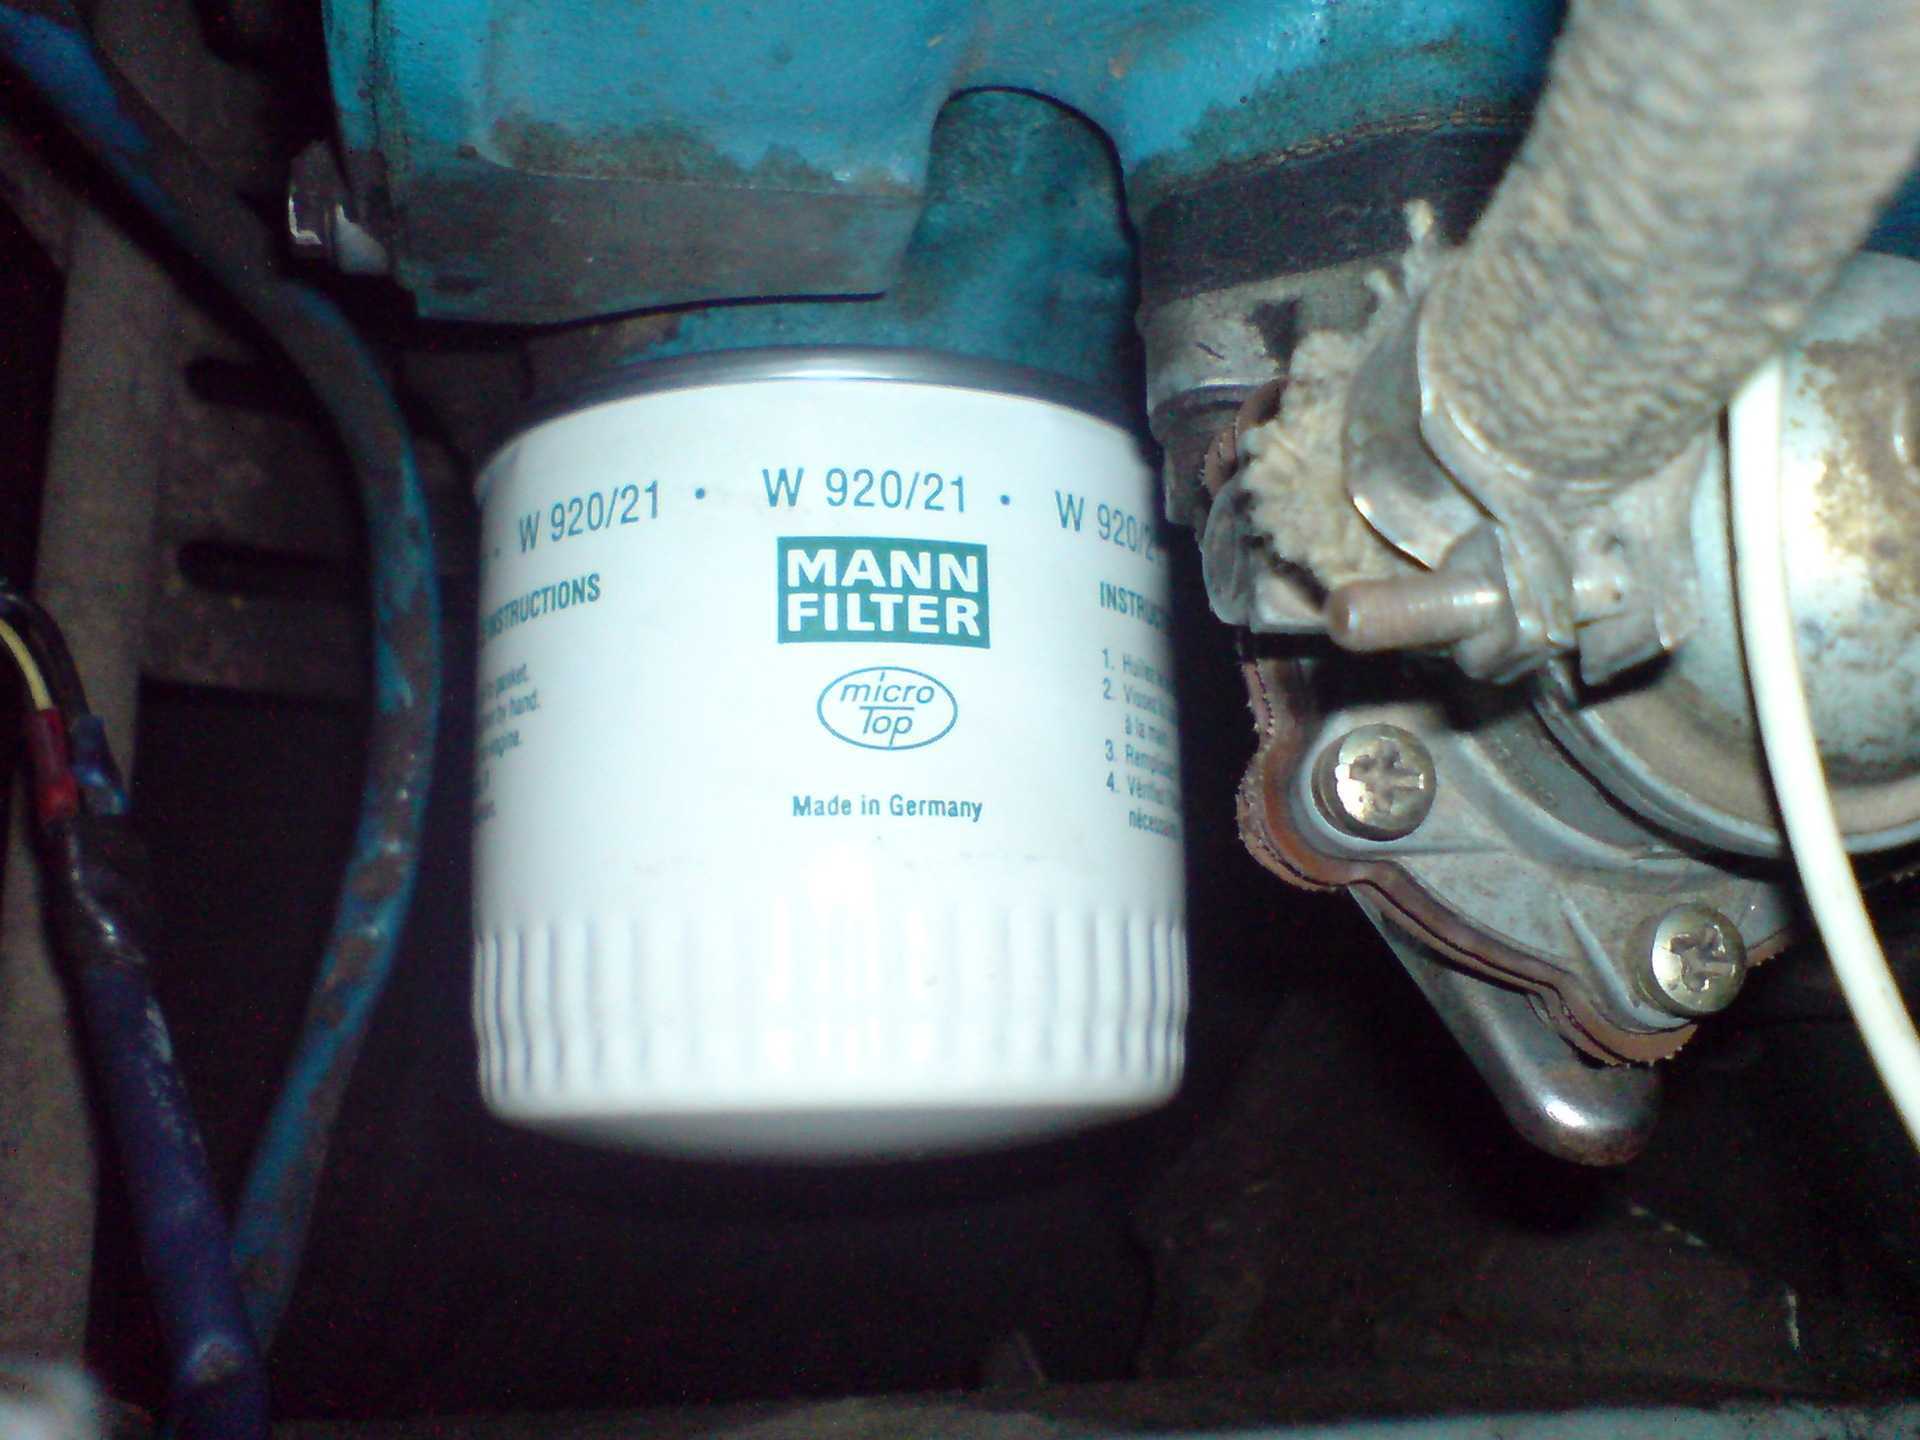 Меняем масло в двигателе ваз 2107: периодичность, какое масло и сколько заливать, подробная видеоинструкция